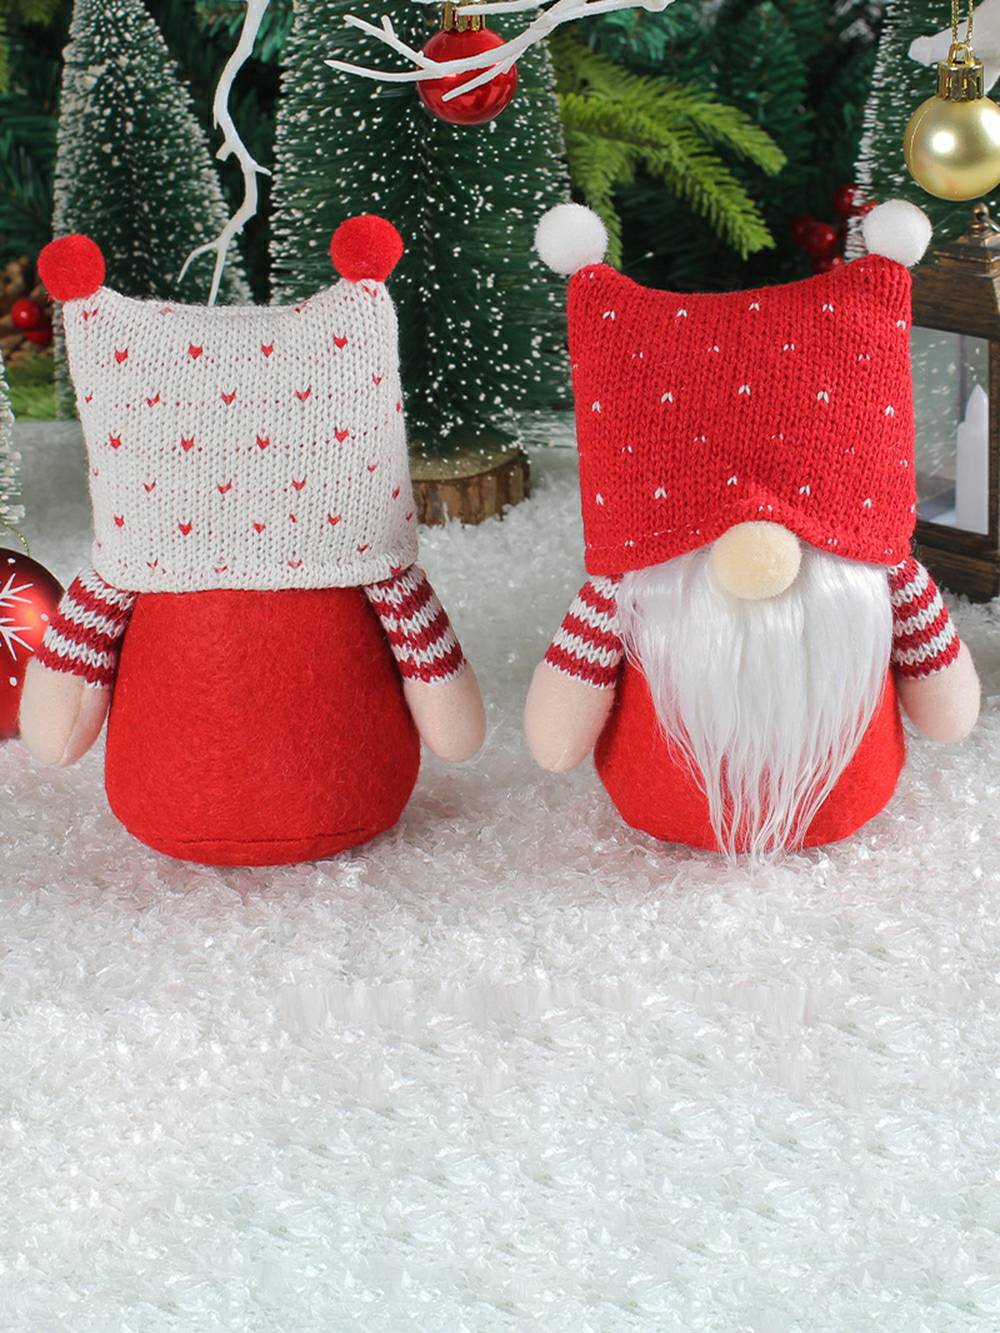 愛らしいクリスマスぬいぐるみエルフカップルとニット帽ルドルフ人形